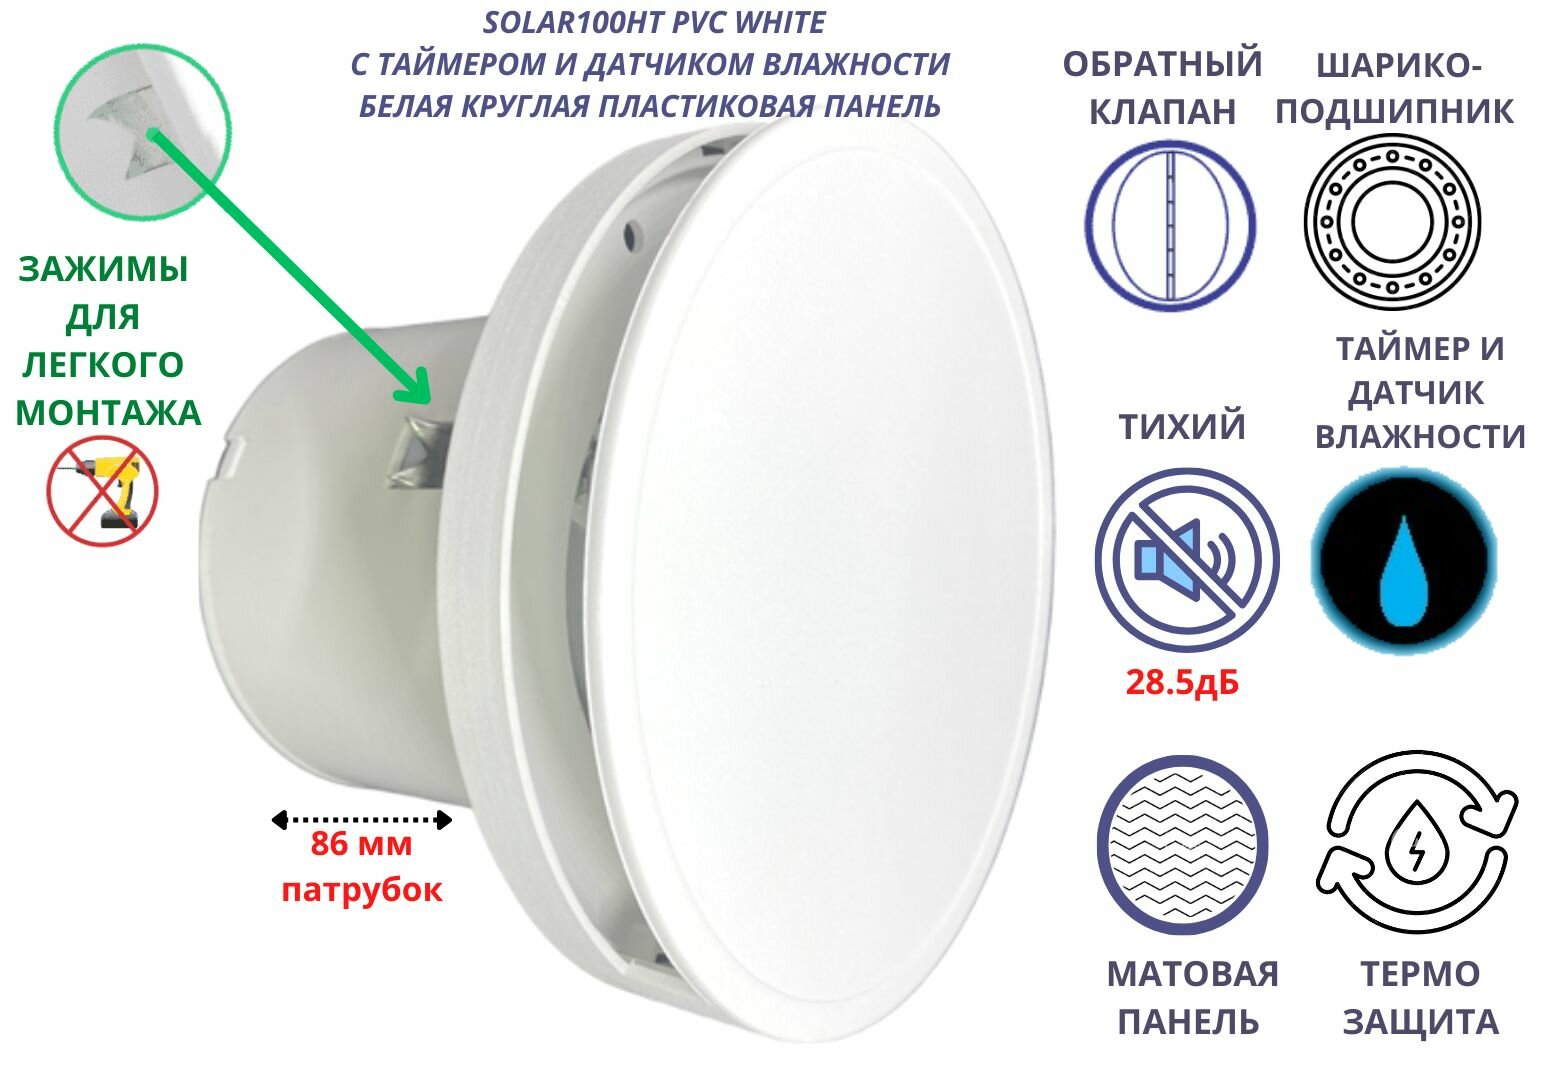 Вентилятор с таймером и датчиком влажности круглый малошумный (285дБ) с обратным клапаном D100мм VENTFAN Solar100 белый матовый пластик Сербия